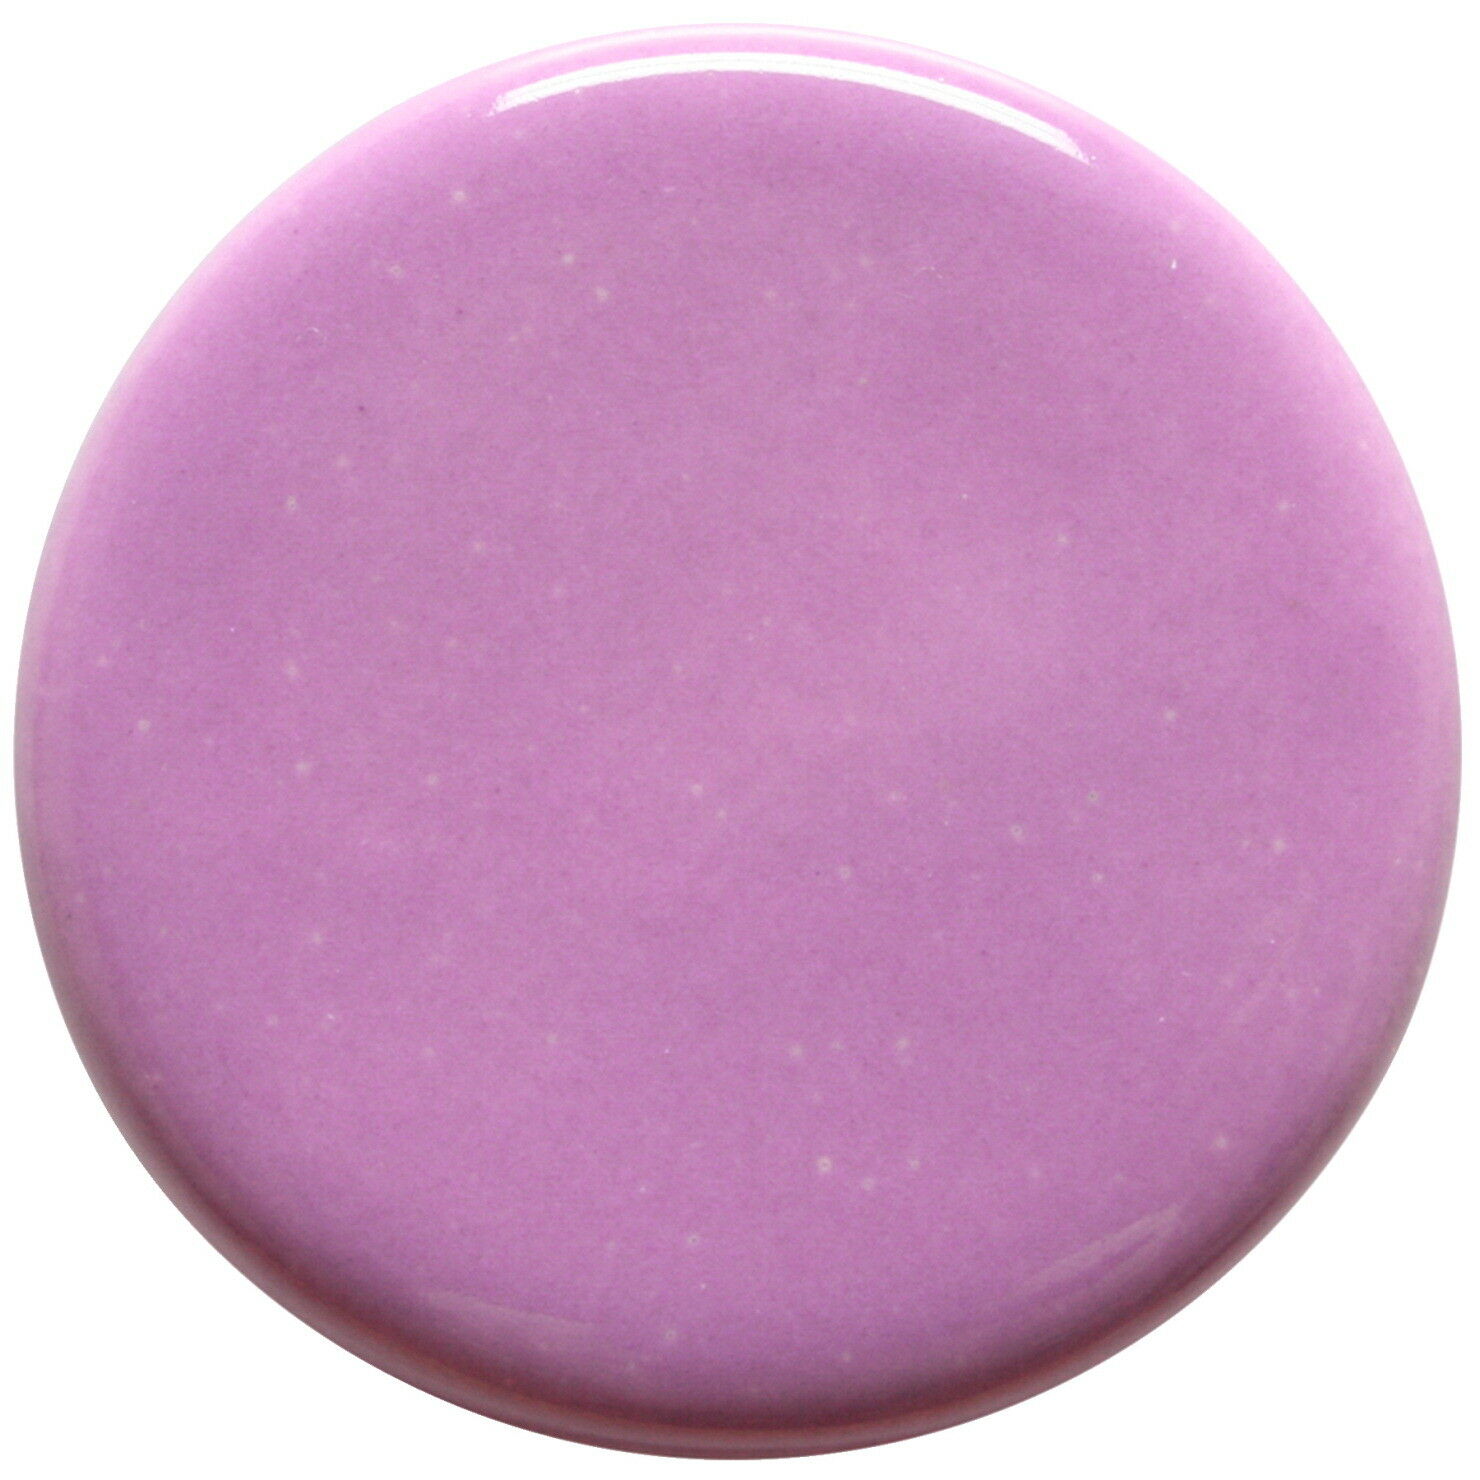 Amaco Teacher's Palette Glaze, Lilac Tp-54, 1 Pint